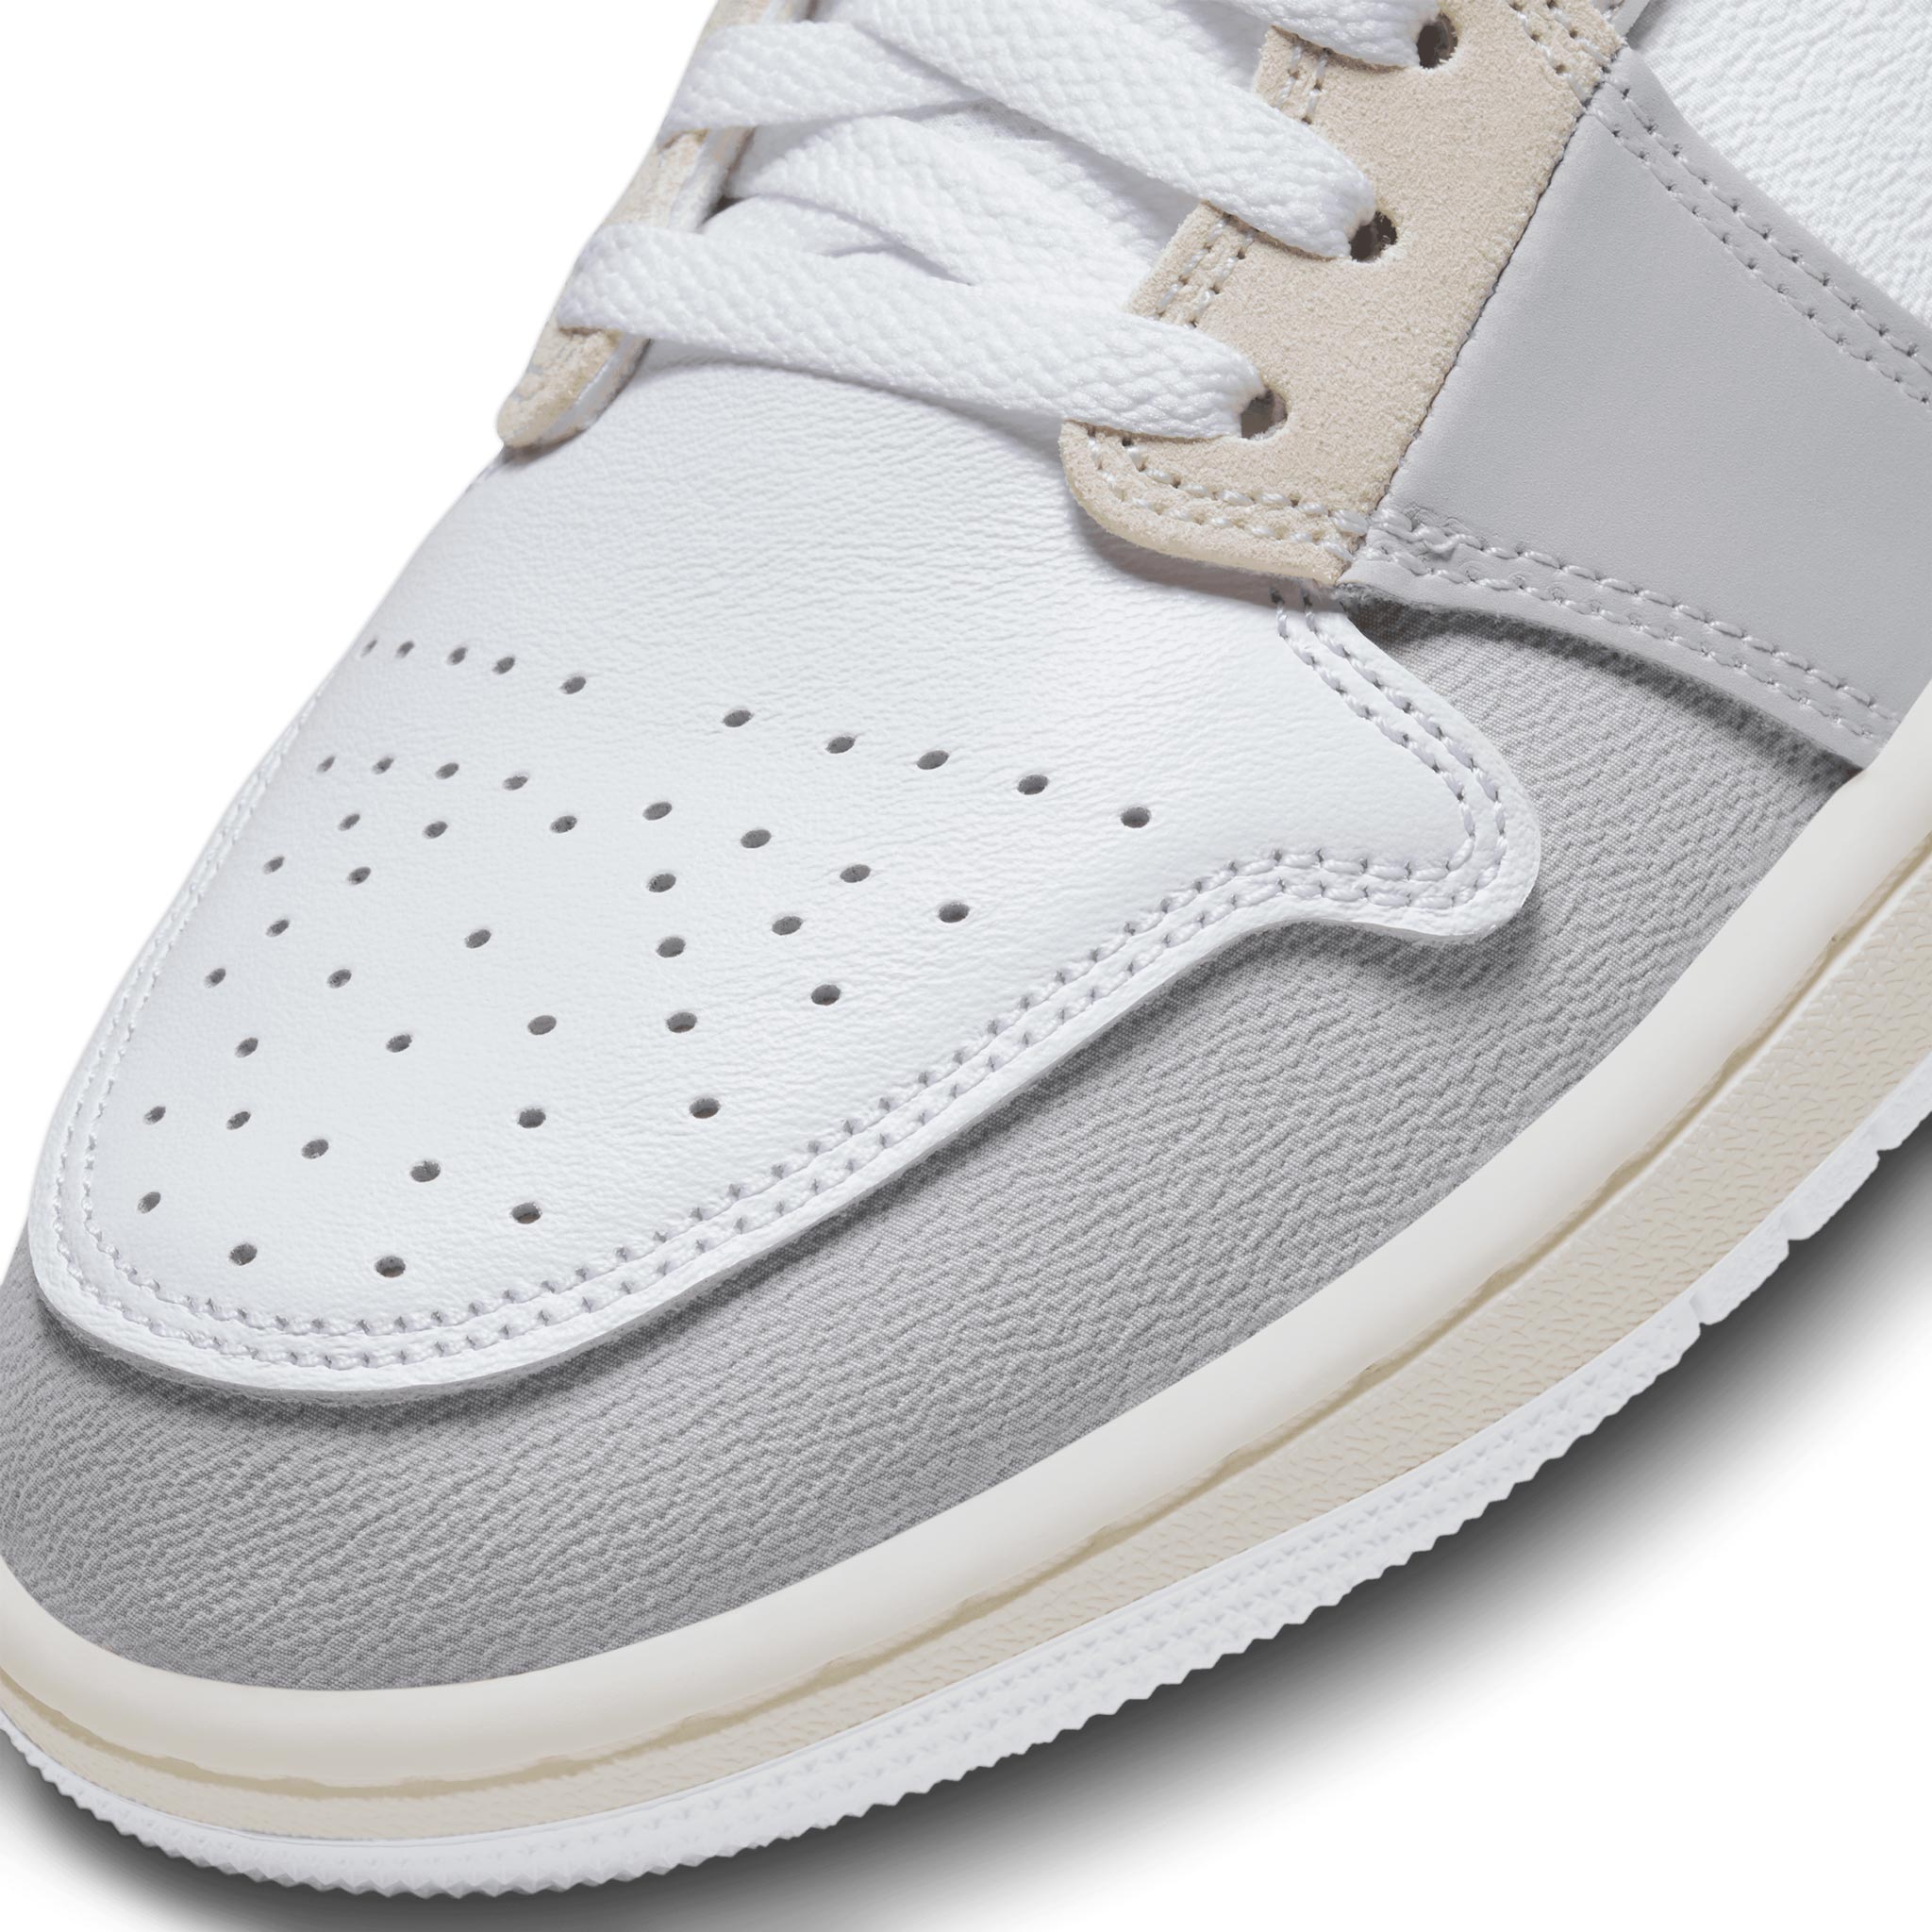 Air Jordan 1 Low SE Craft Tech Grey Sneakers